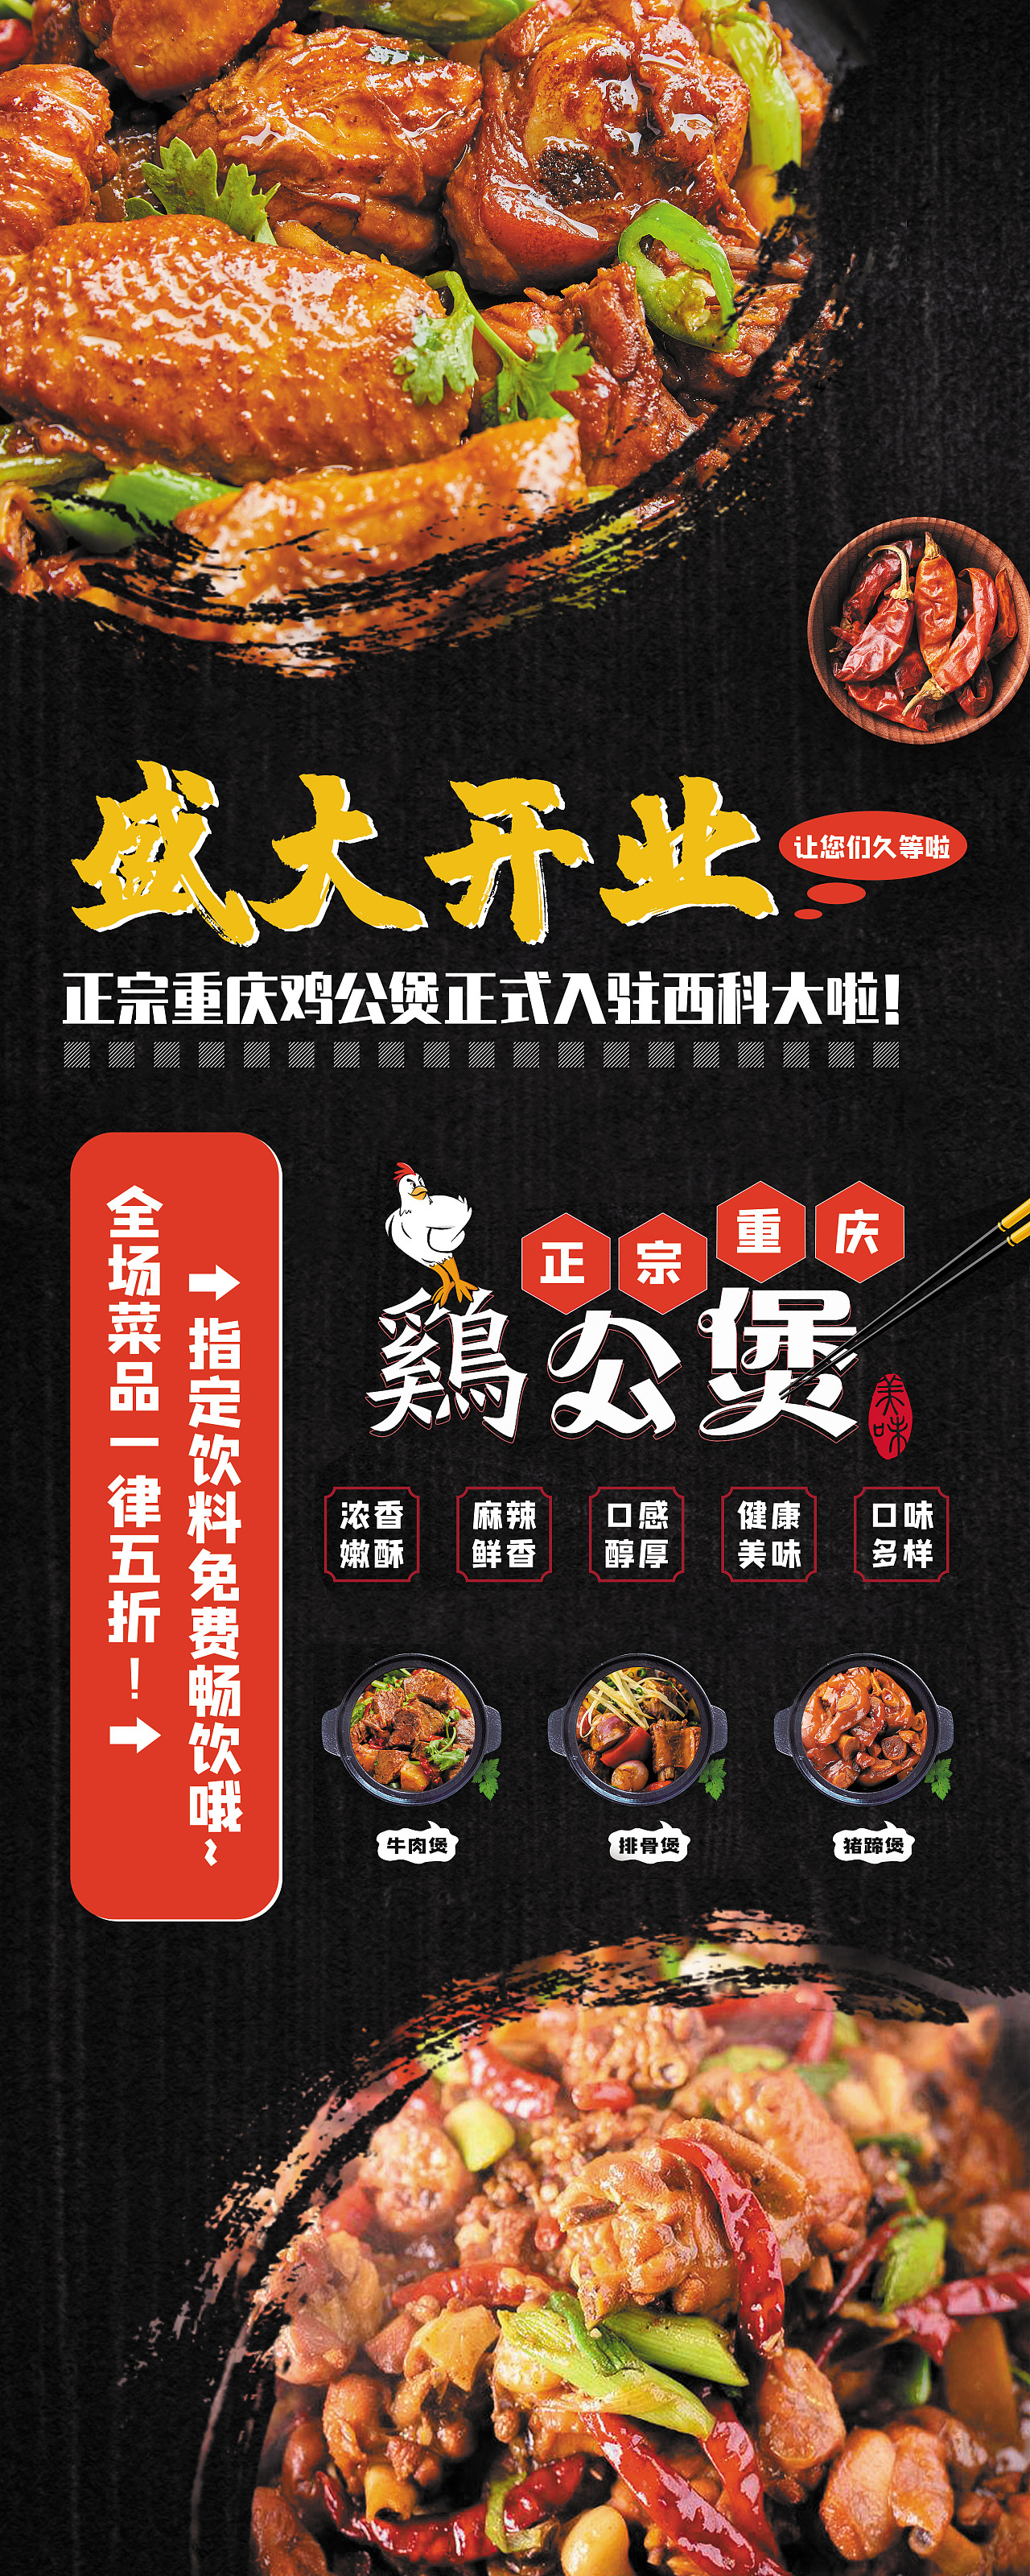 重庆鸡公煲广告平面广告素材免费下载(图片编号:2258569)-六图网